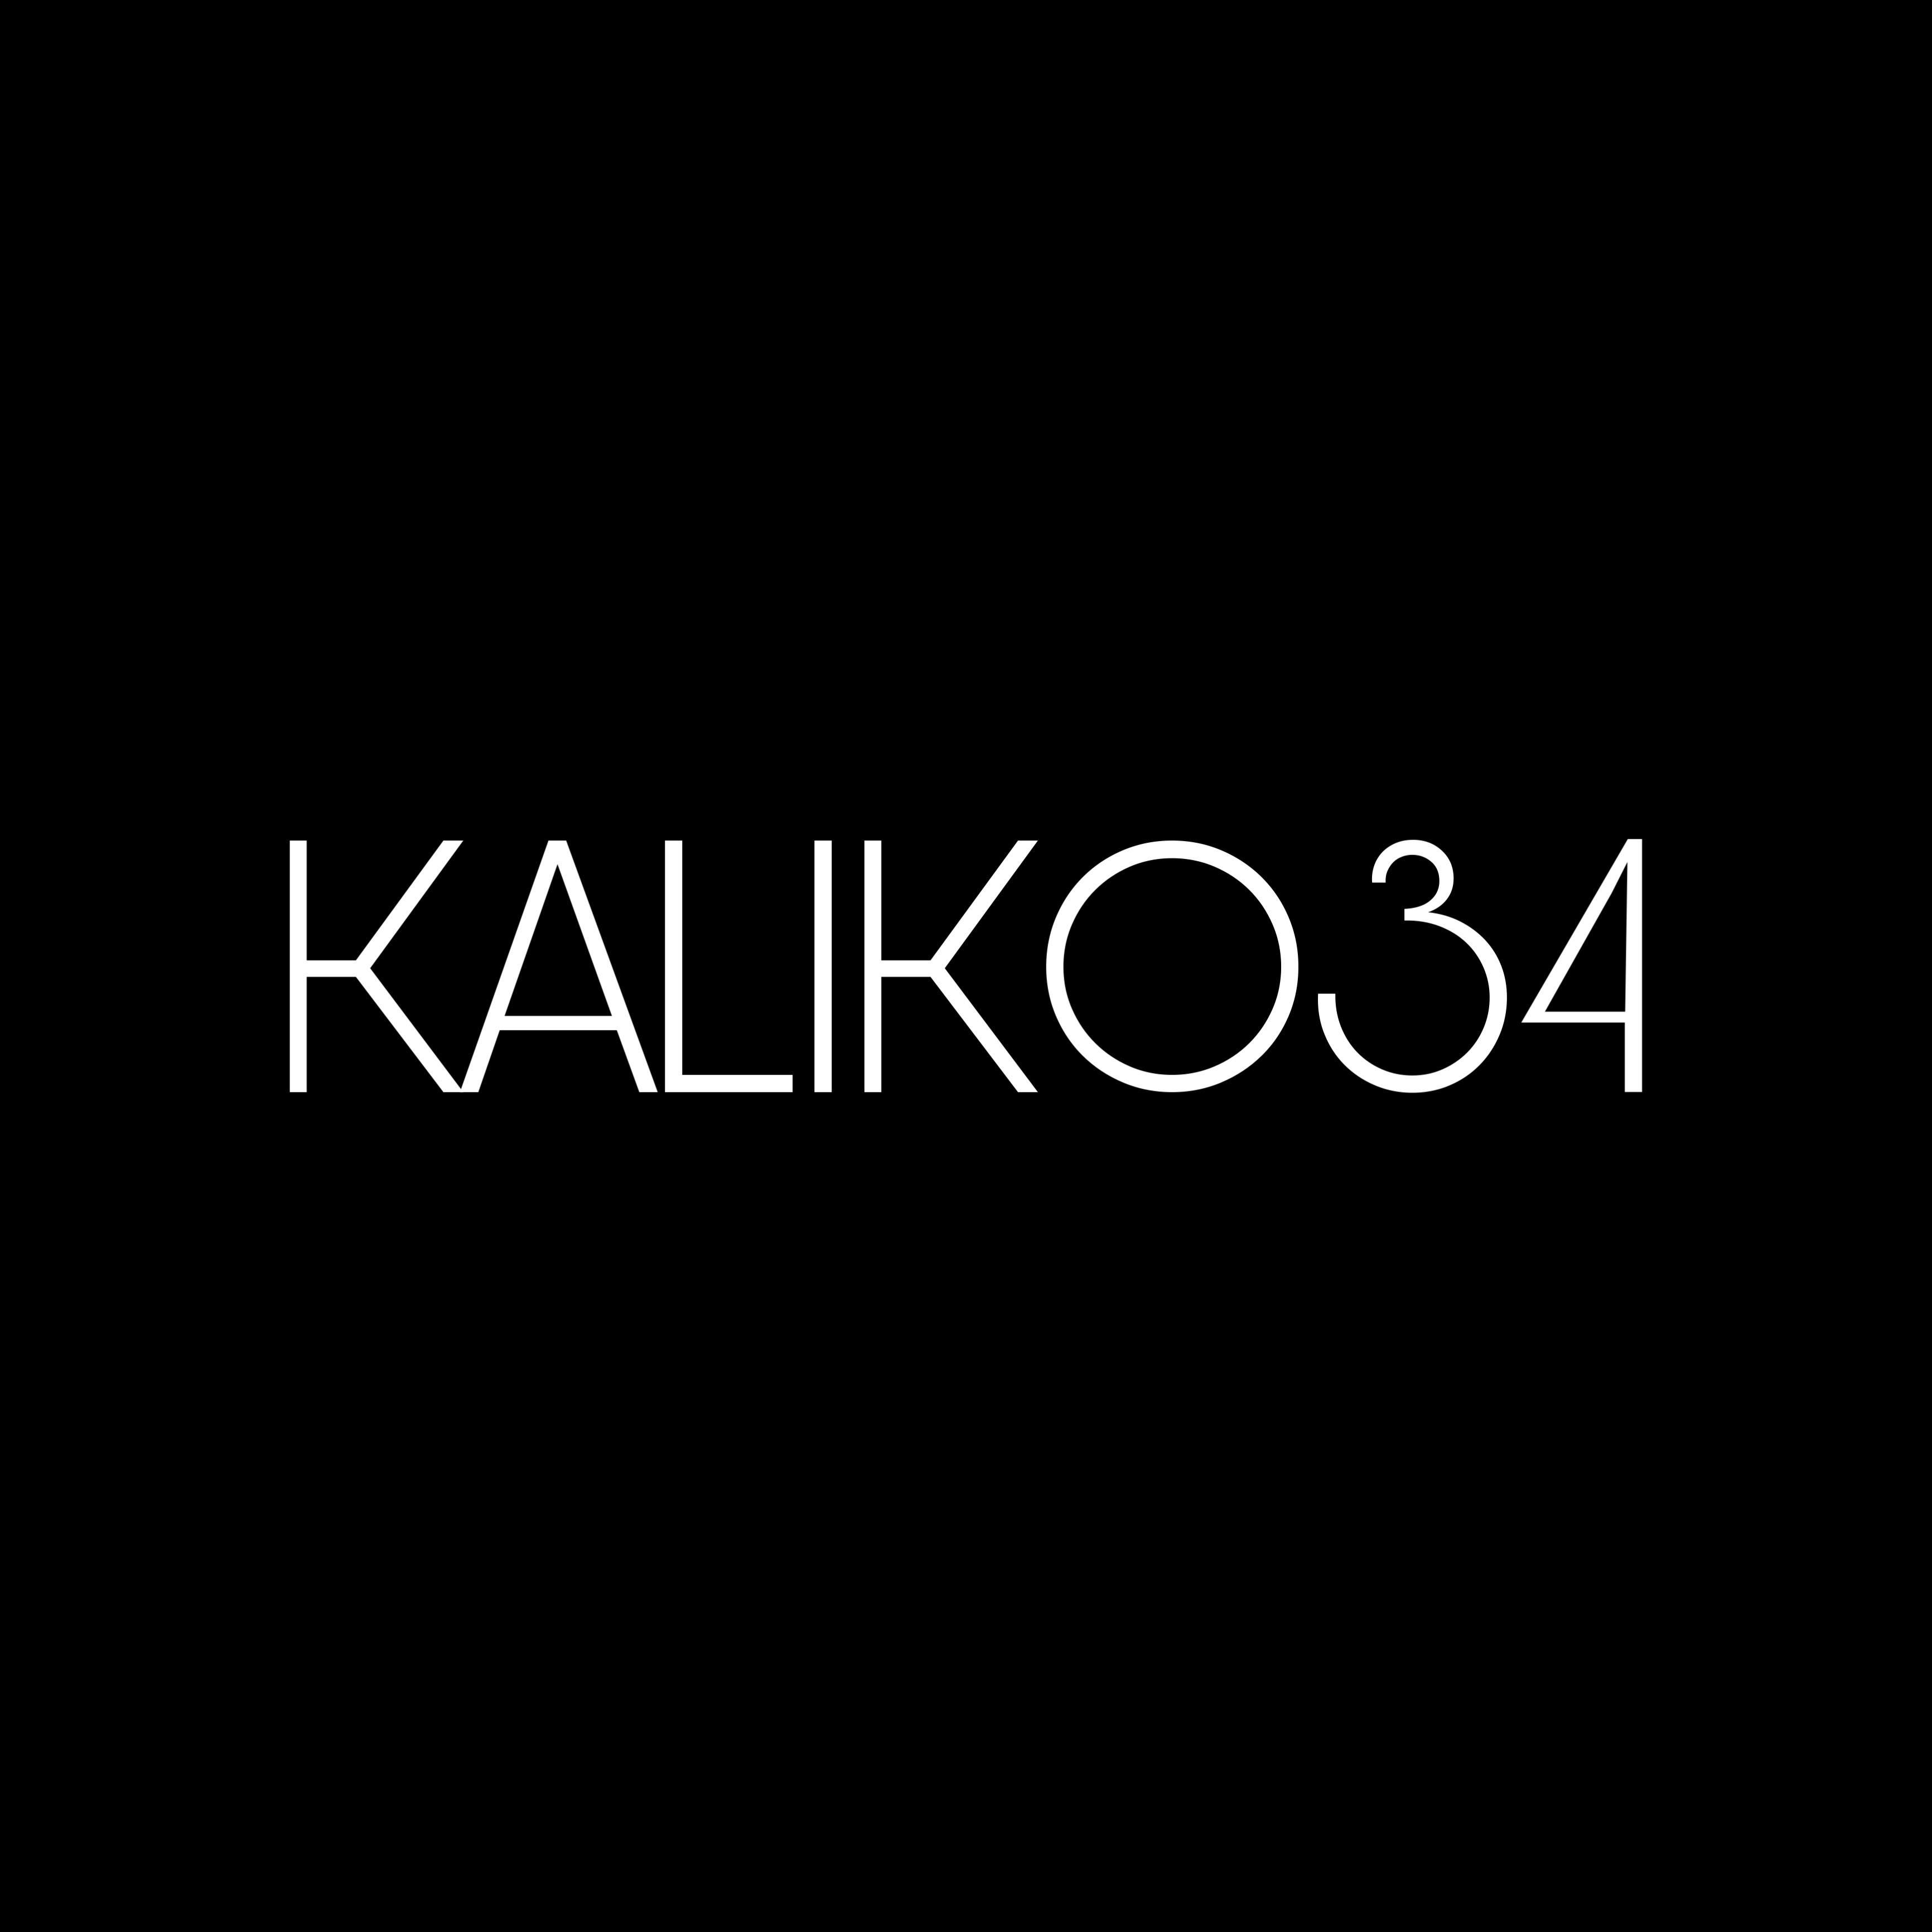 kaliko34